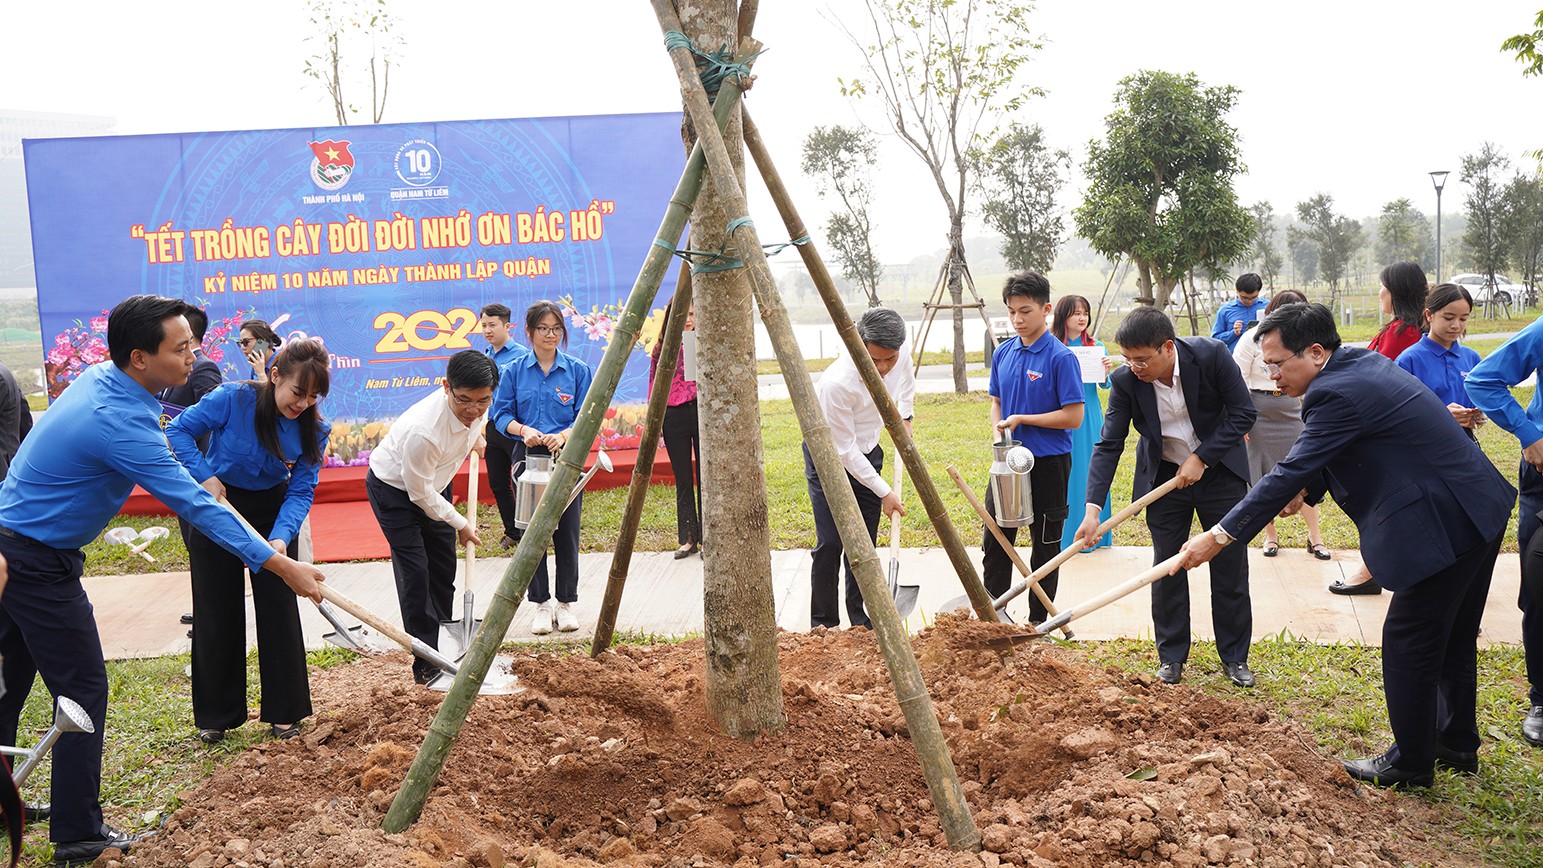 Thực hiện lời dạy của Chủ tịch Hồ Chí Minh, nhiều năm qua Tết trồng cây đã trở thành nét đẹp trong ngày đầu xuân